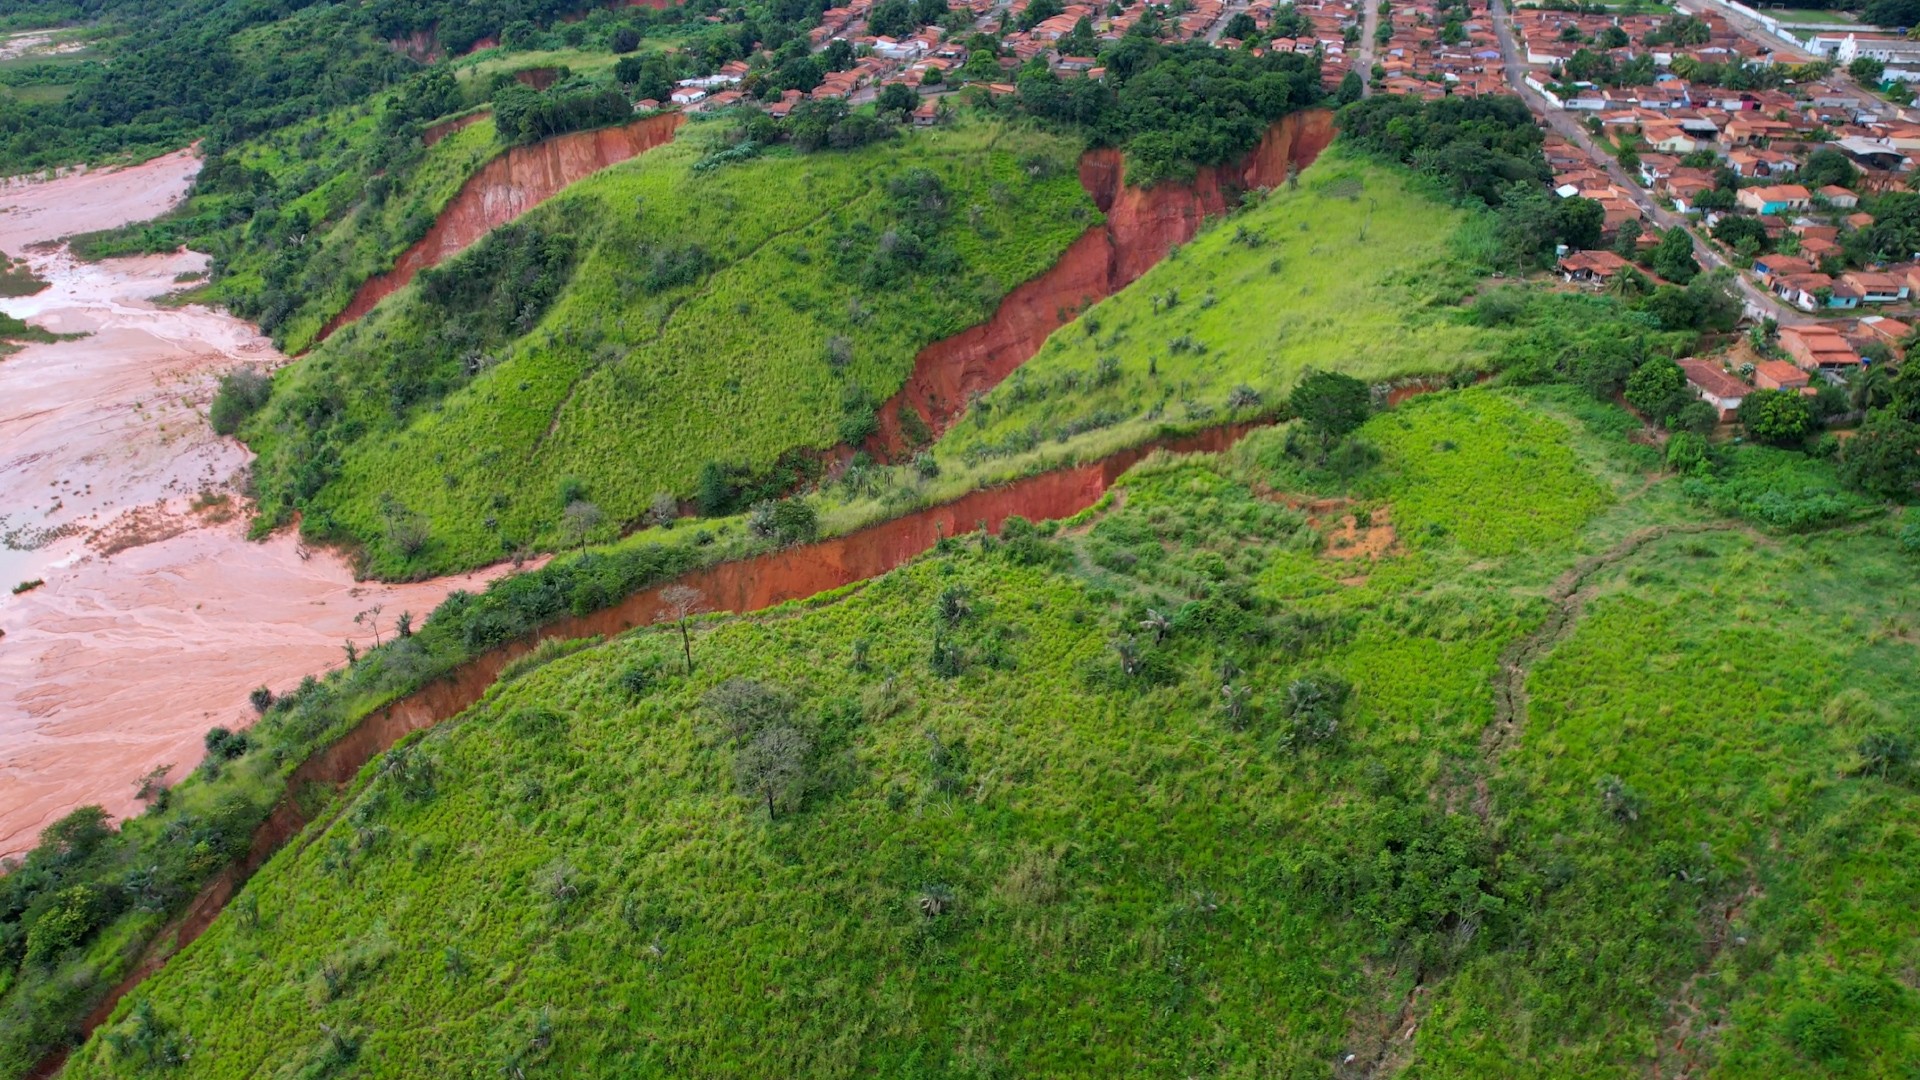 Desmatamento causou crateras que ameaçam 'engolir' casas em cidade no Maranhão